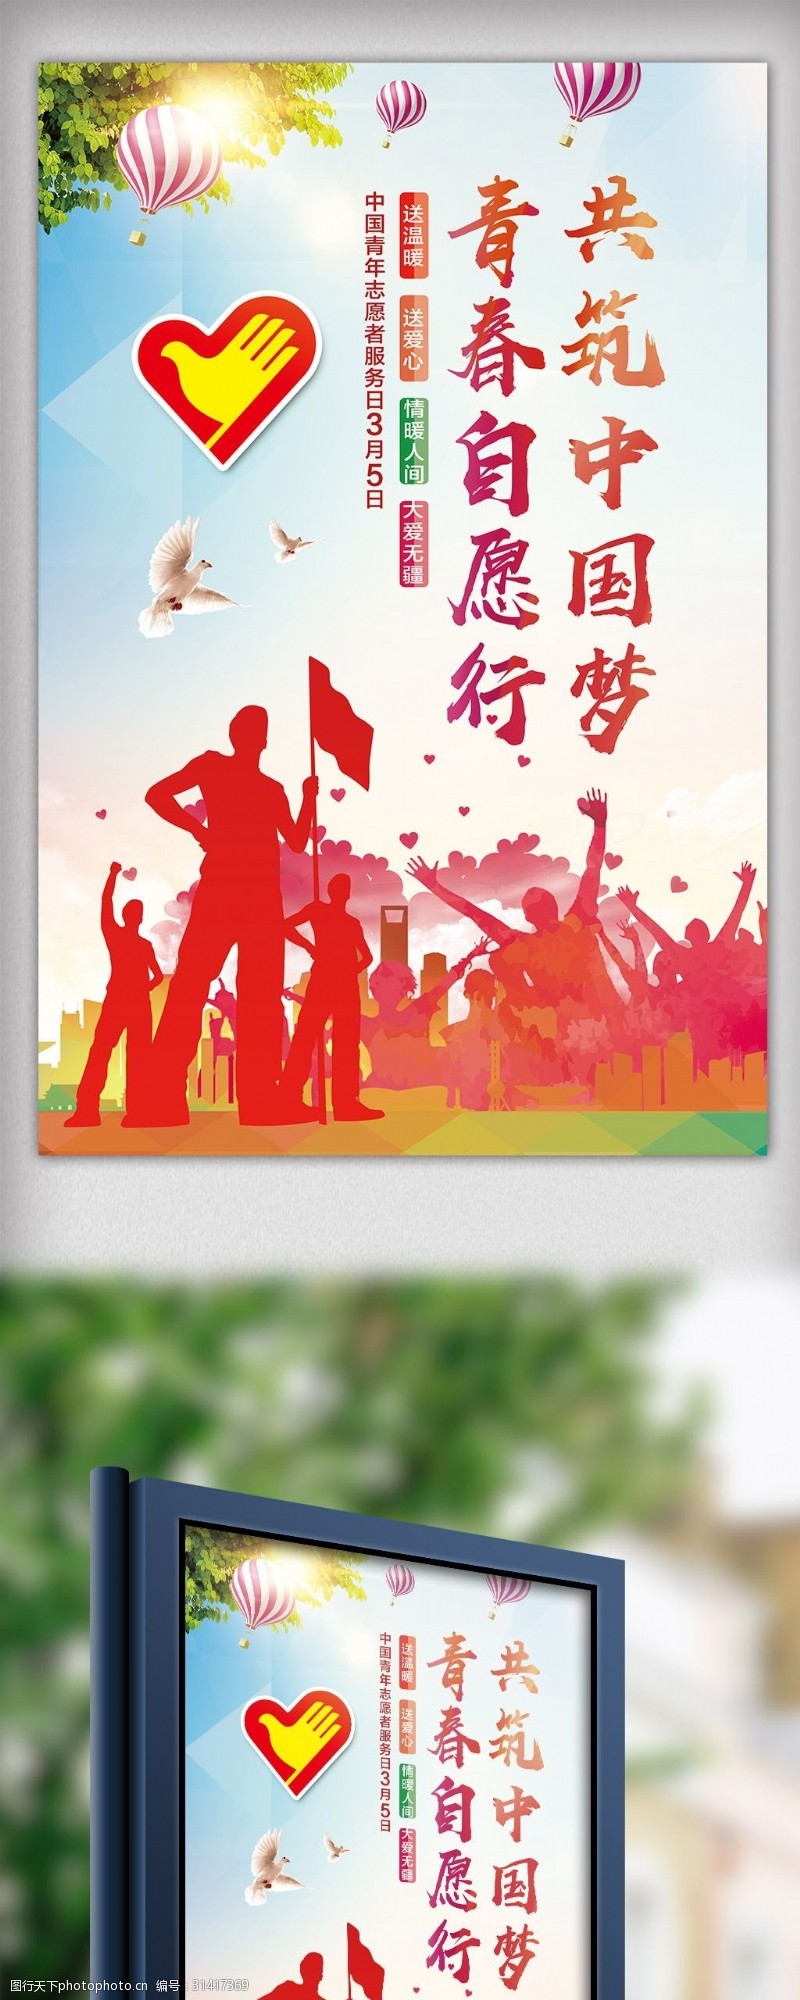 志愿服务展板3月5日中国青年志愿者服务日宣传海报